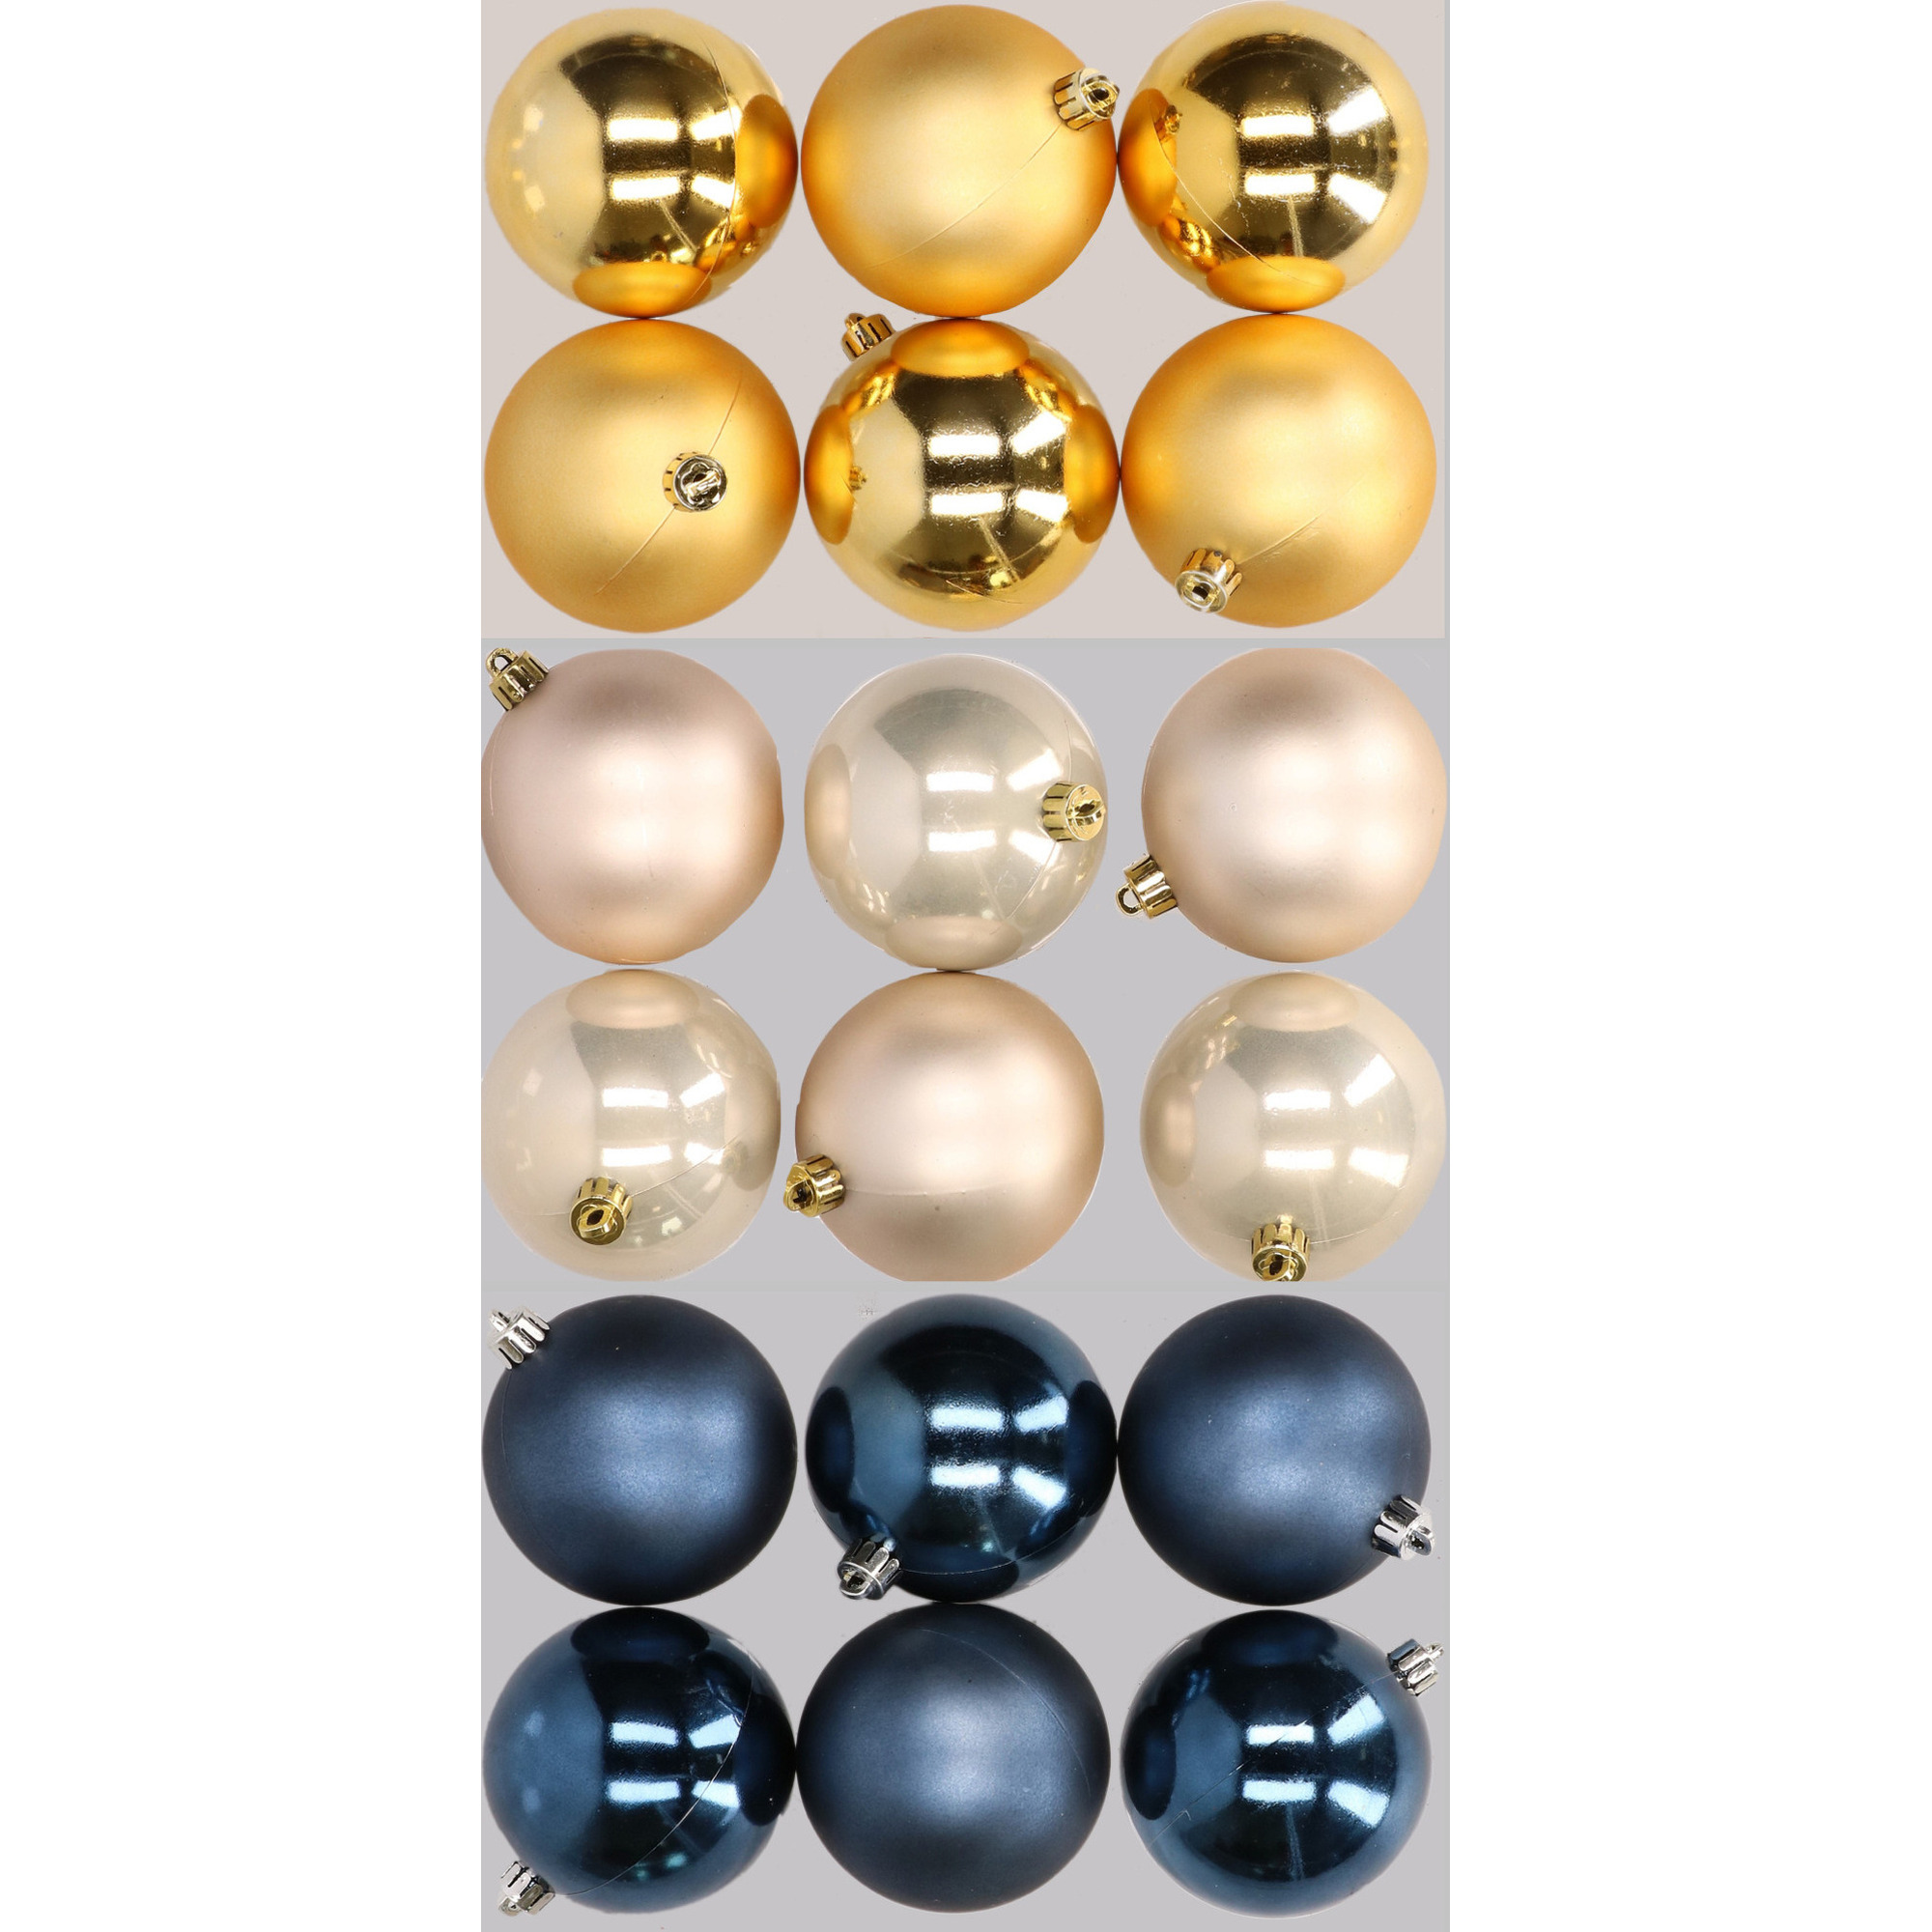 18x stuks kunststof kerstballen mix van donkerblauw, champagne en goud 8 cm